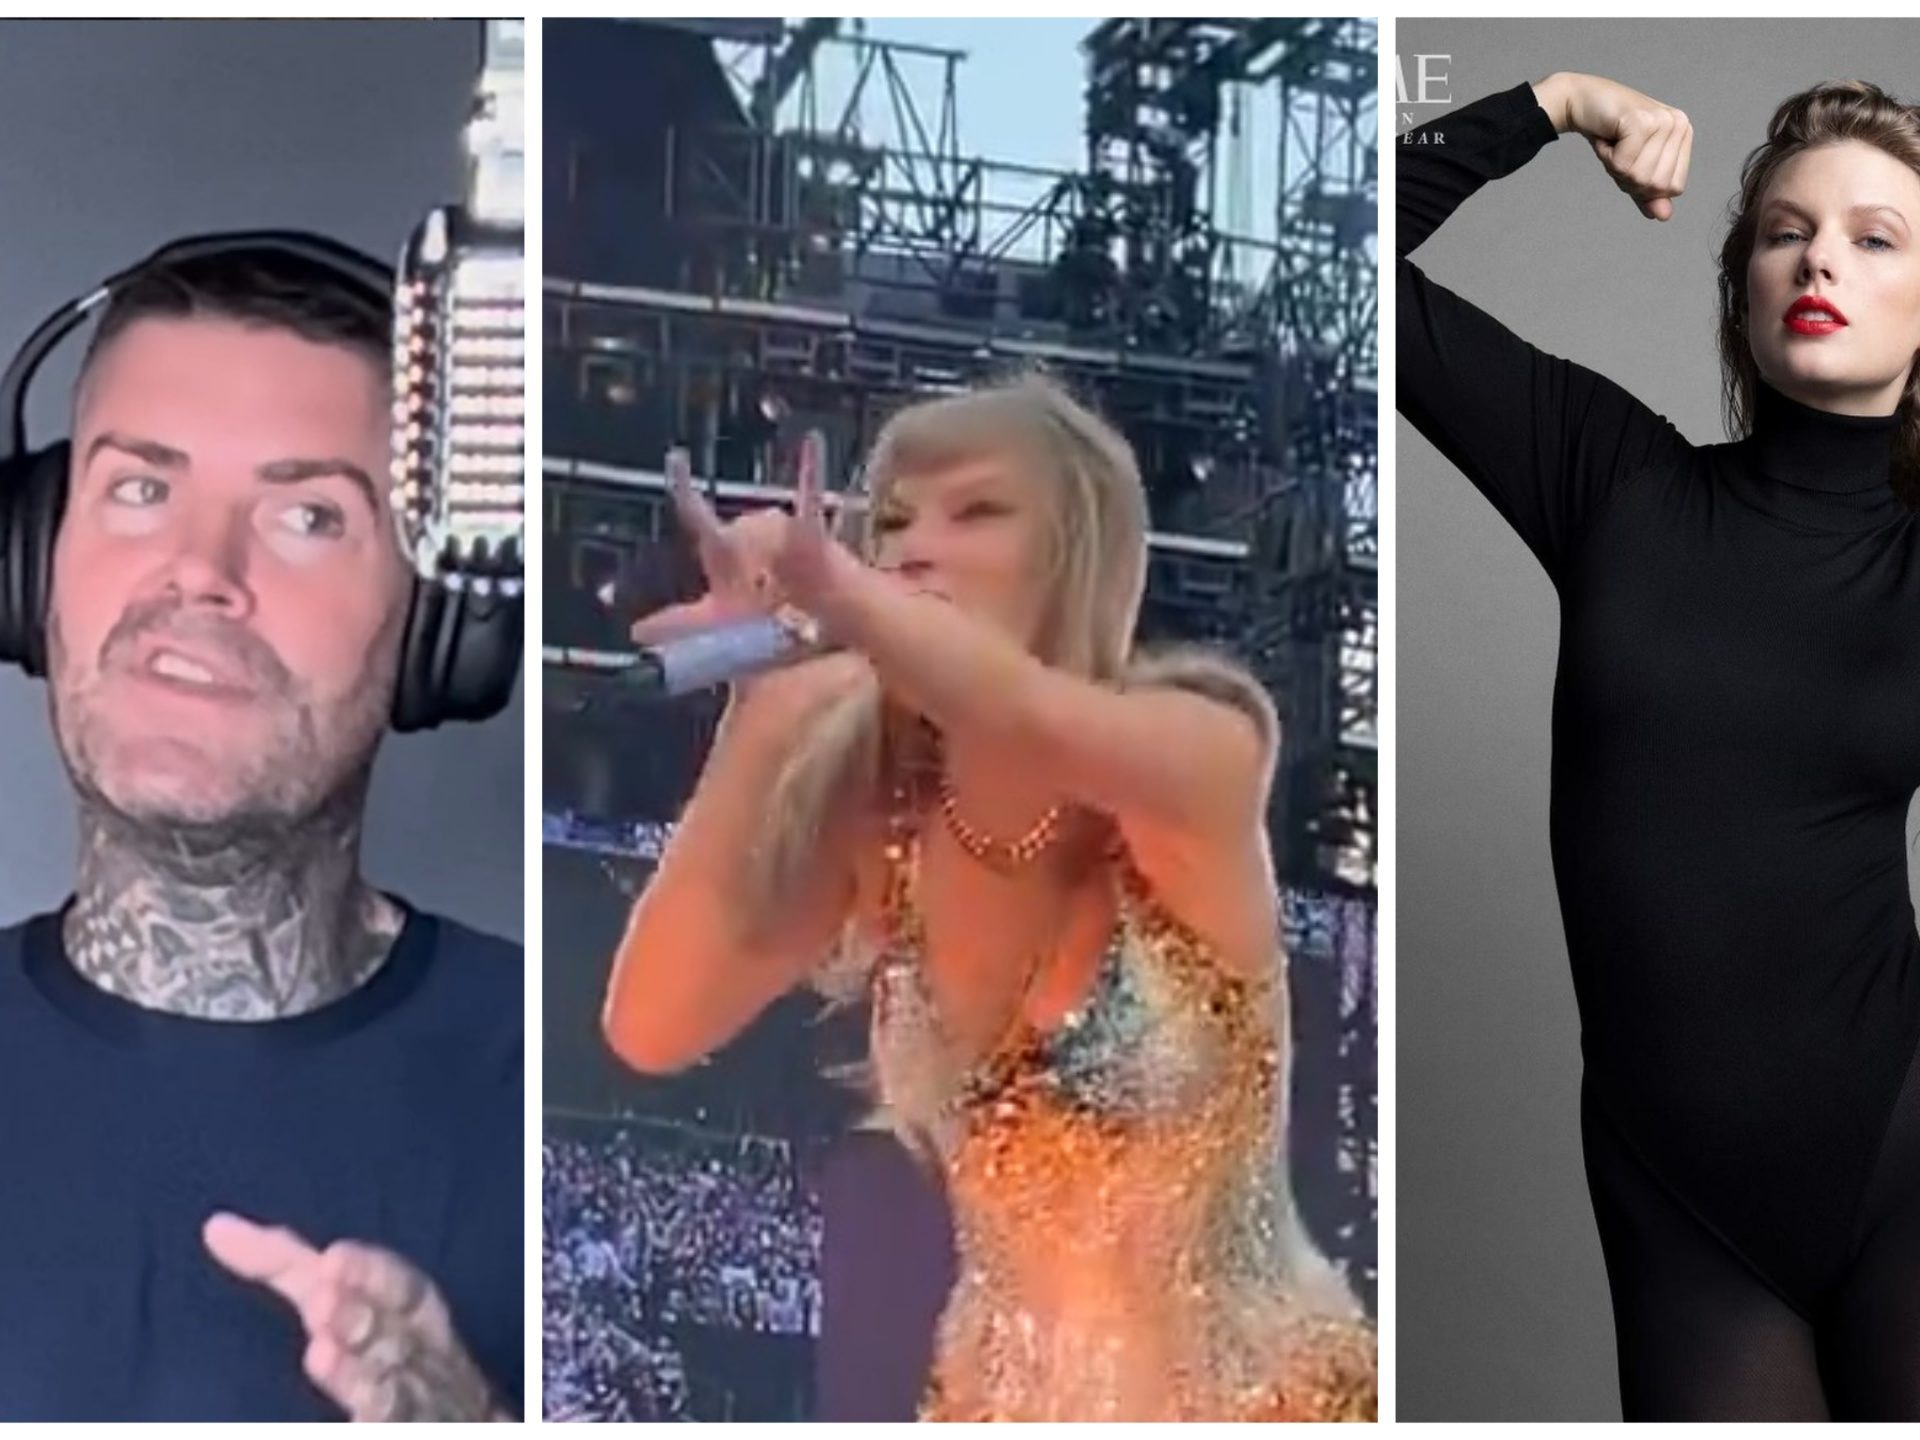 Shane Lynch dei Boyzone accusa Taylor Swift di eseguire riti satanici ai concerti